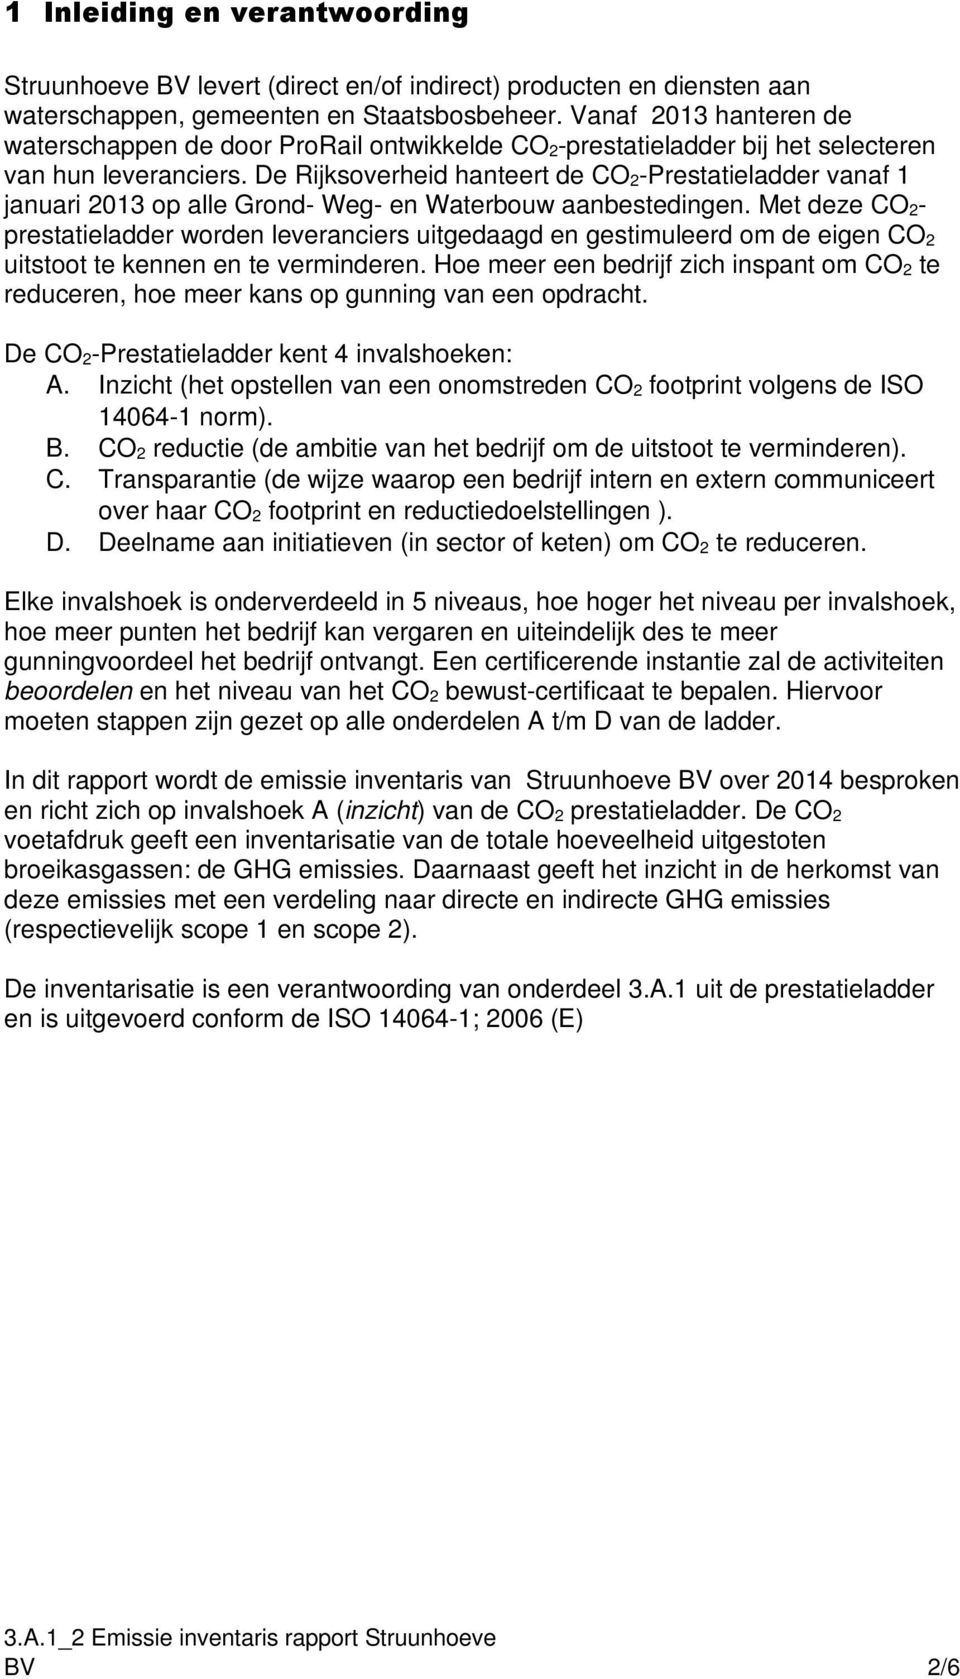 De Rijksoverheid hanteert de CO 2-Prestatieladder vanaf 1 januari 2013 op alle Grond- Weg- en Waterbouw aanbestedingen.